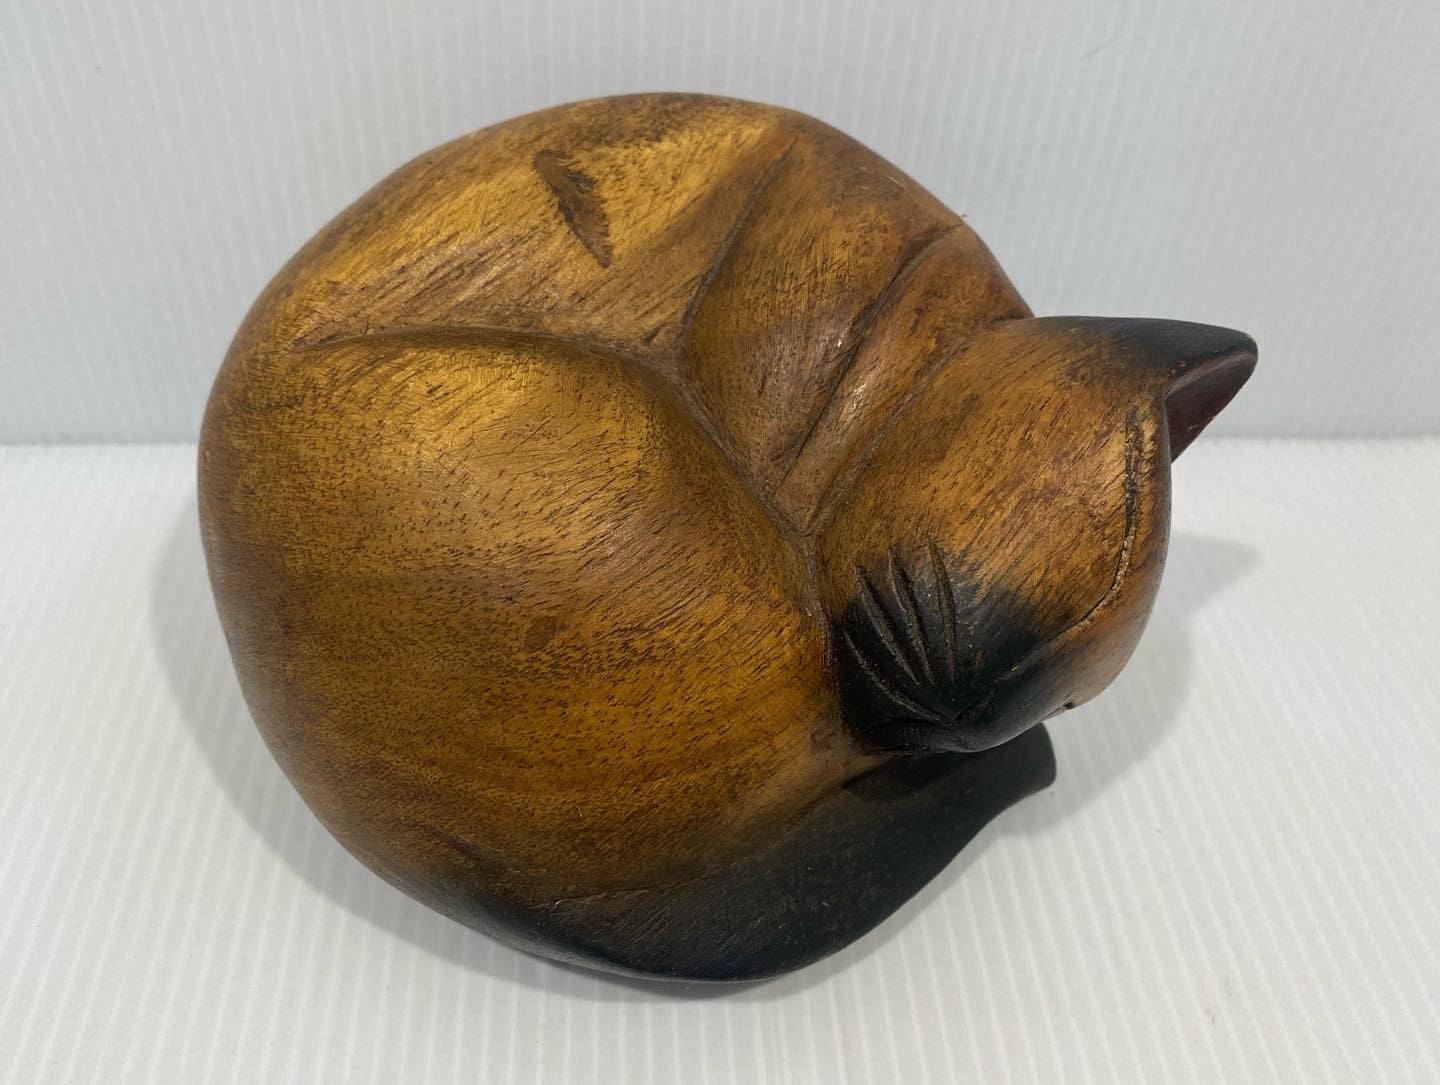 Beautiful Vintage, handmade, Carved wood cat figure.